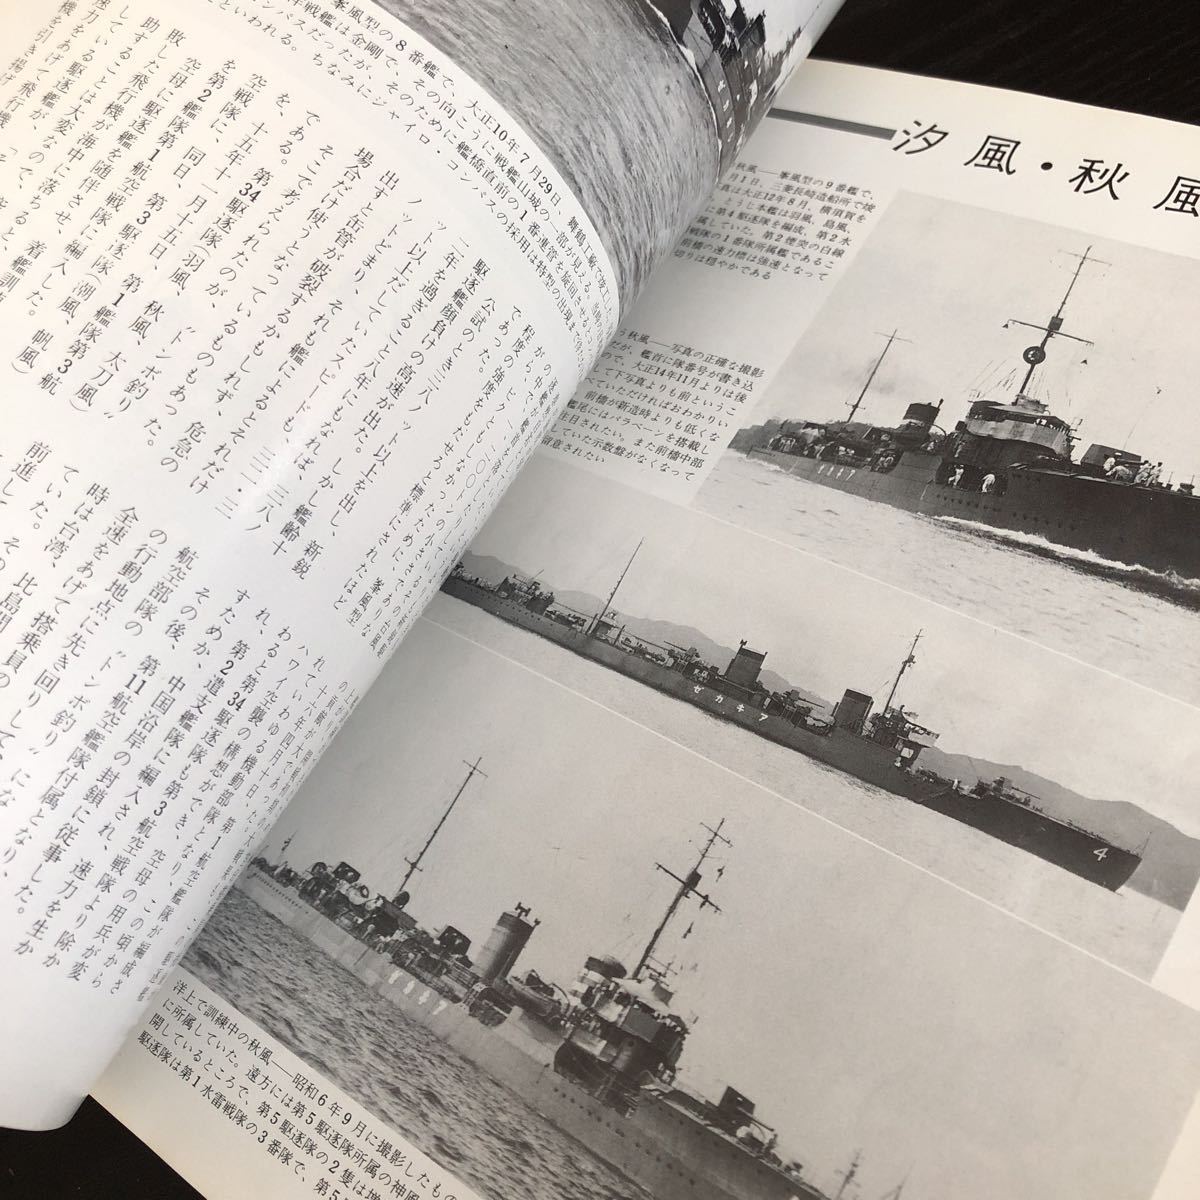 ル70 丸スペシャル 日本の駆逐艦 昭和56年5月 1981年 潮書房 日本海軍 軍艦 潜水艦 戦争 戦後 歴史 戦艦 特攻兵器 船 資料 睦月型_画像7